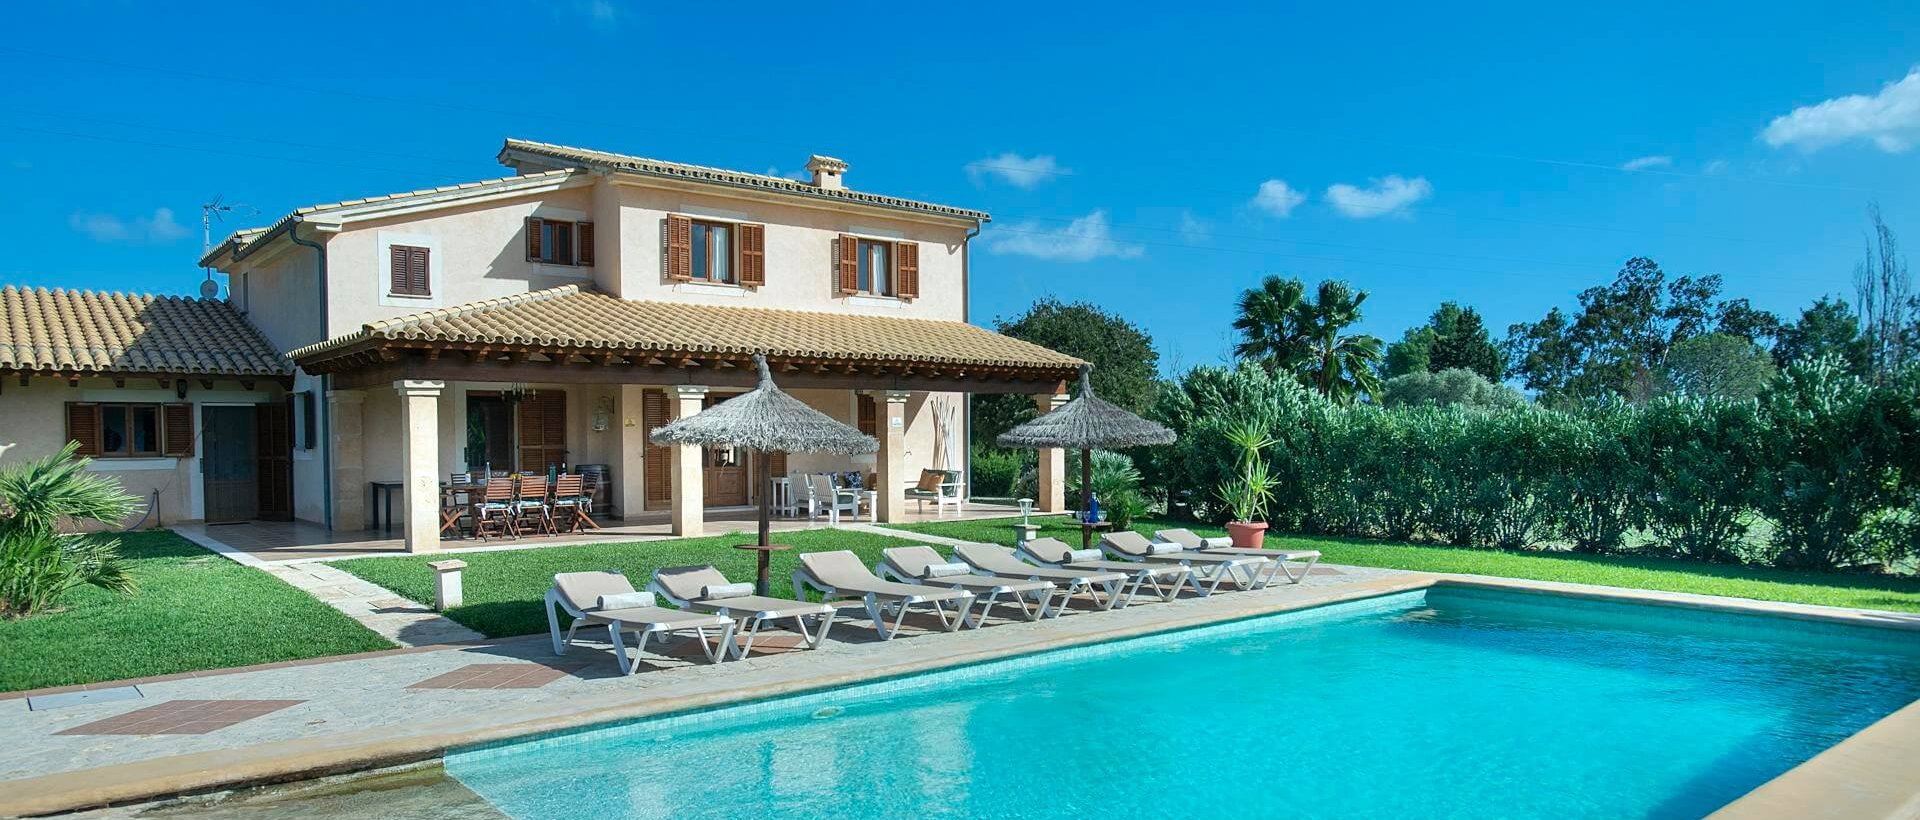 Ferienhaus Mallorca mit Pool für 8 Personen zu mieten